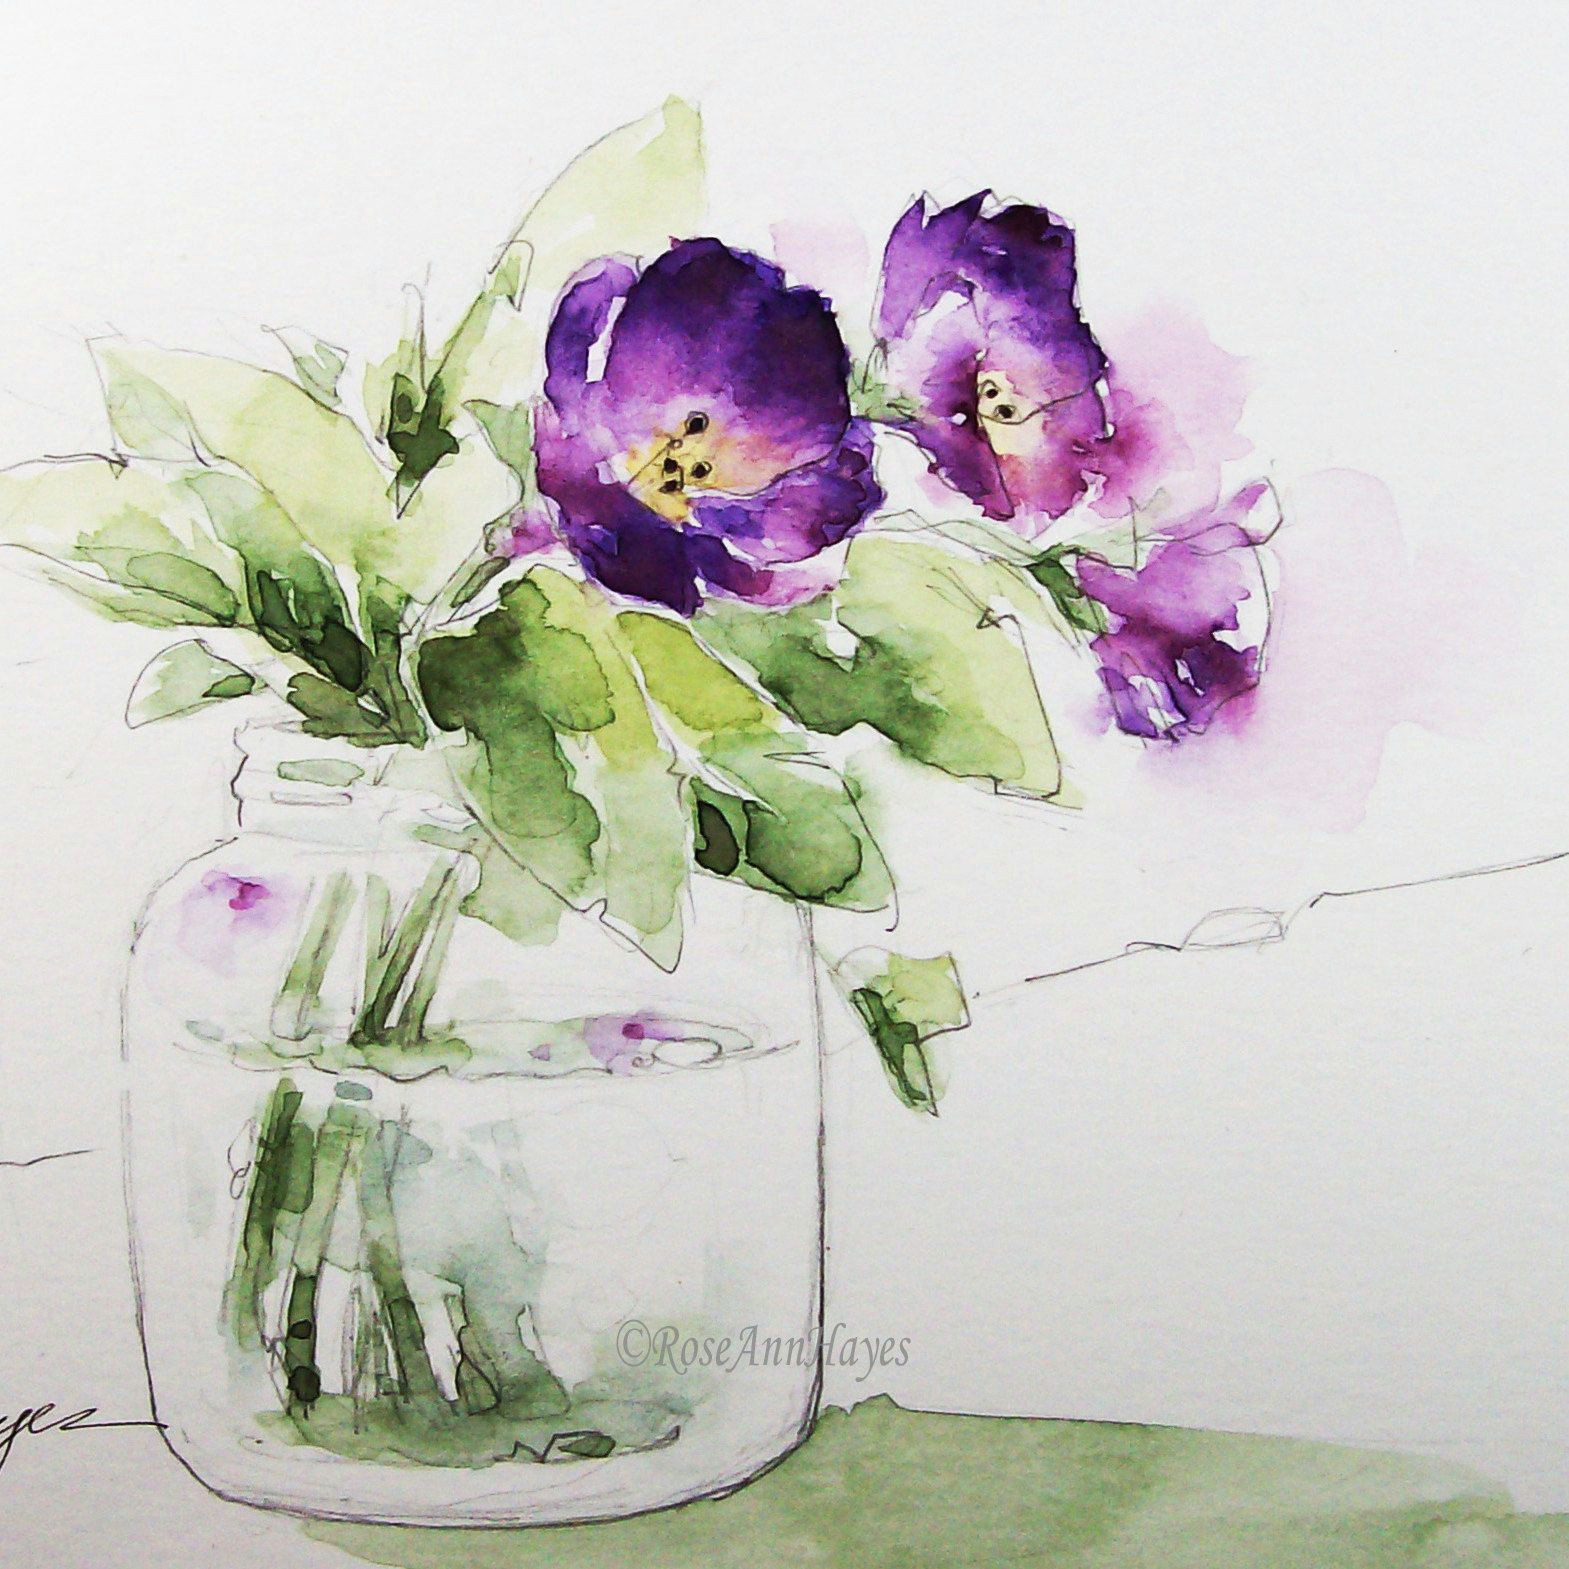 Drawings Of Flowers In A Jar Watercolor Paintings by Roseann Hayes by Roseannhayes On Etsy